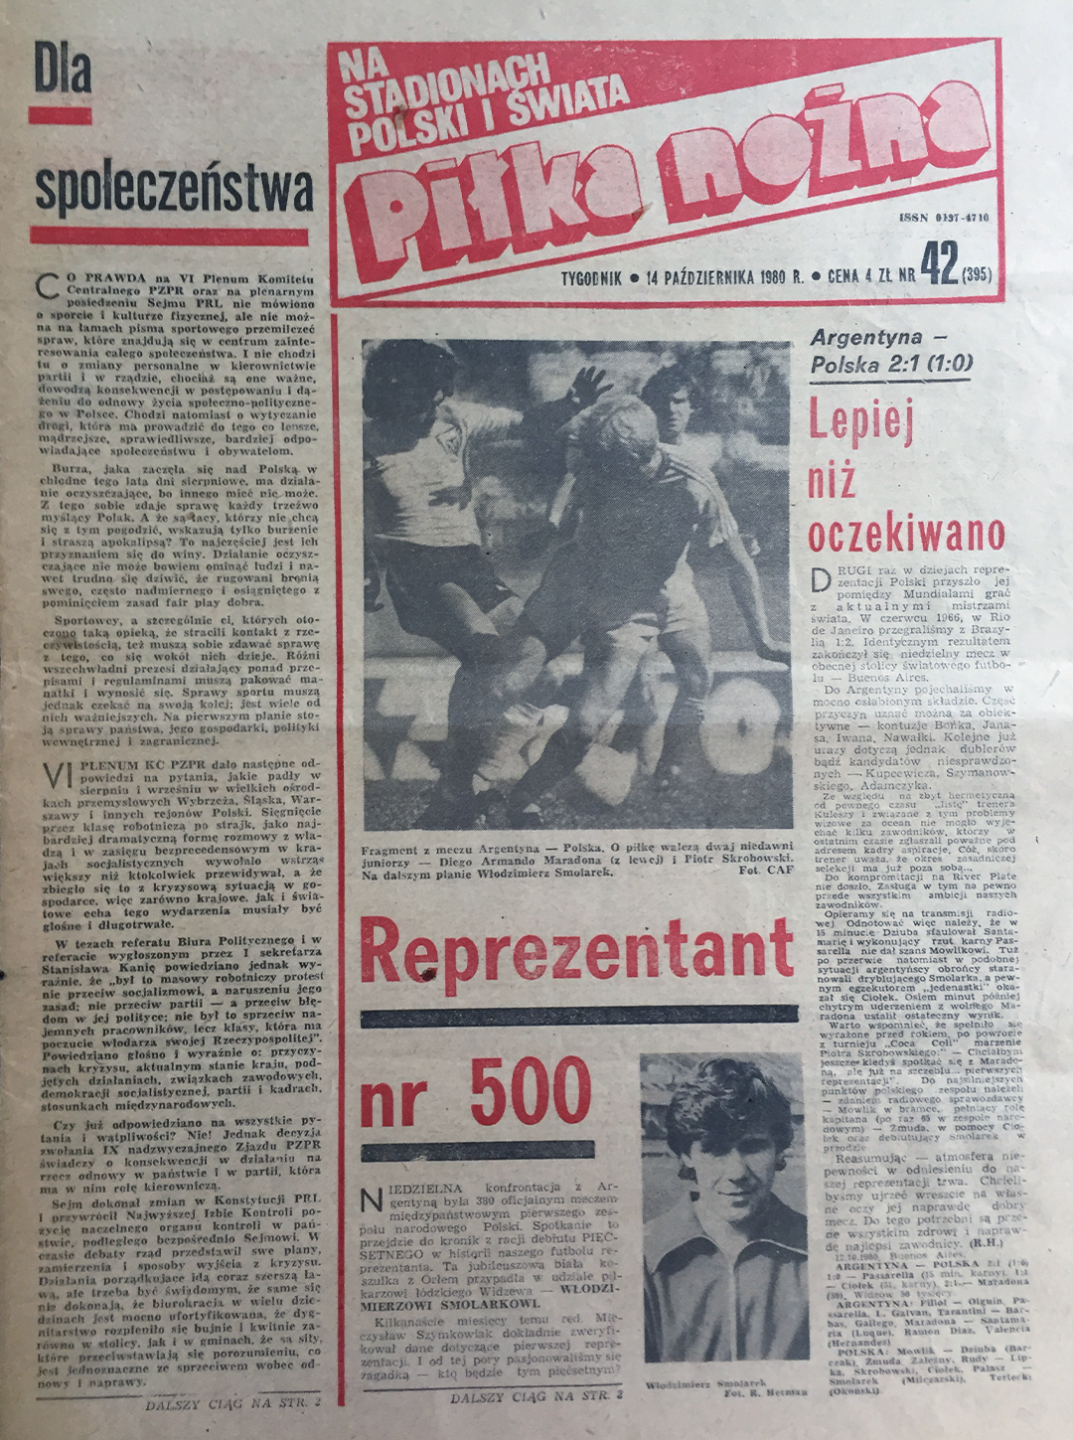 Okładka piłki nożnej po meczu argentyna - polska (12.10.1980)